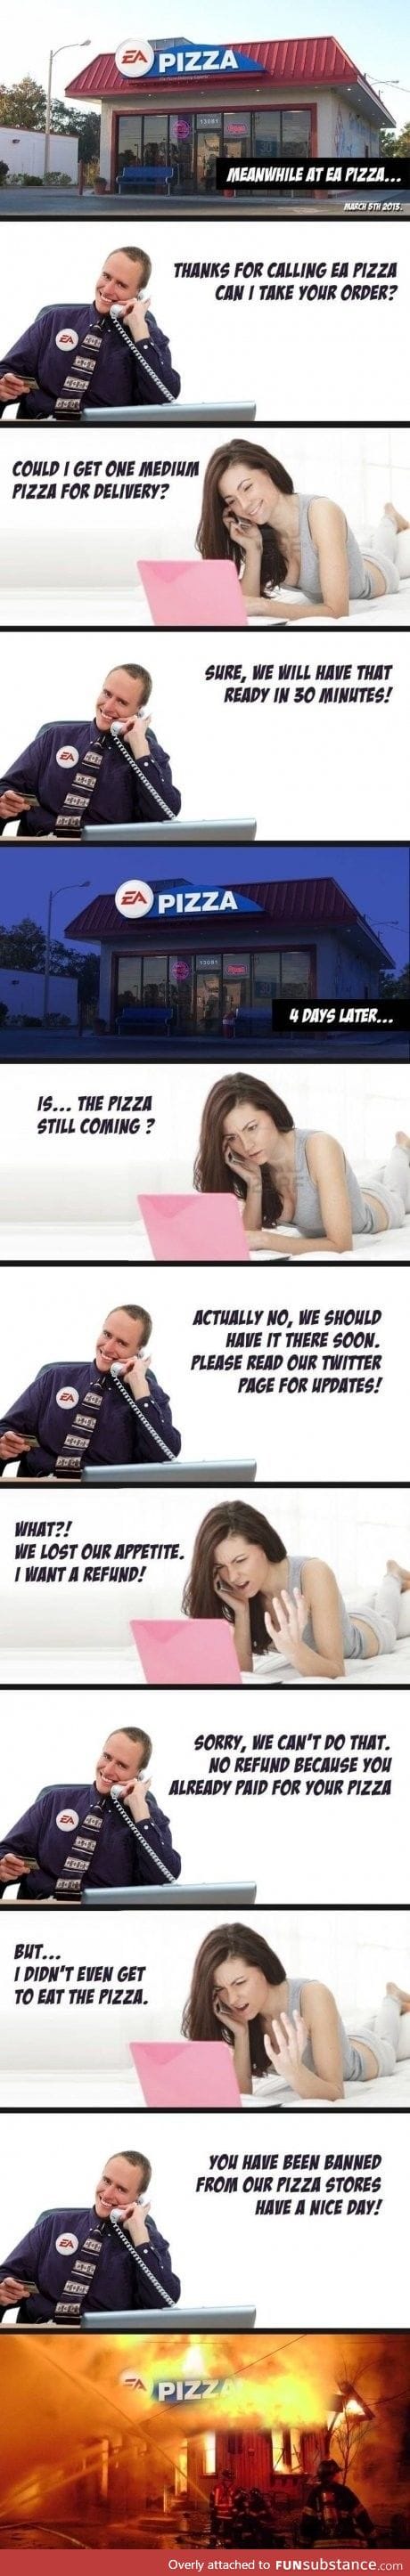 EA pizza